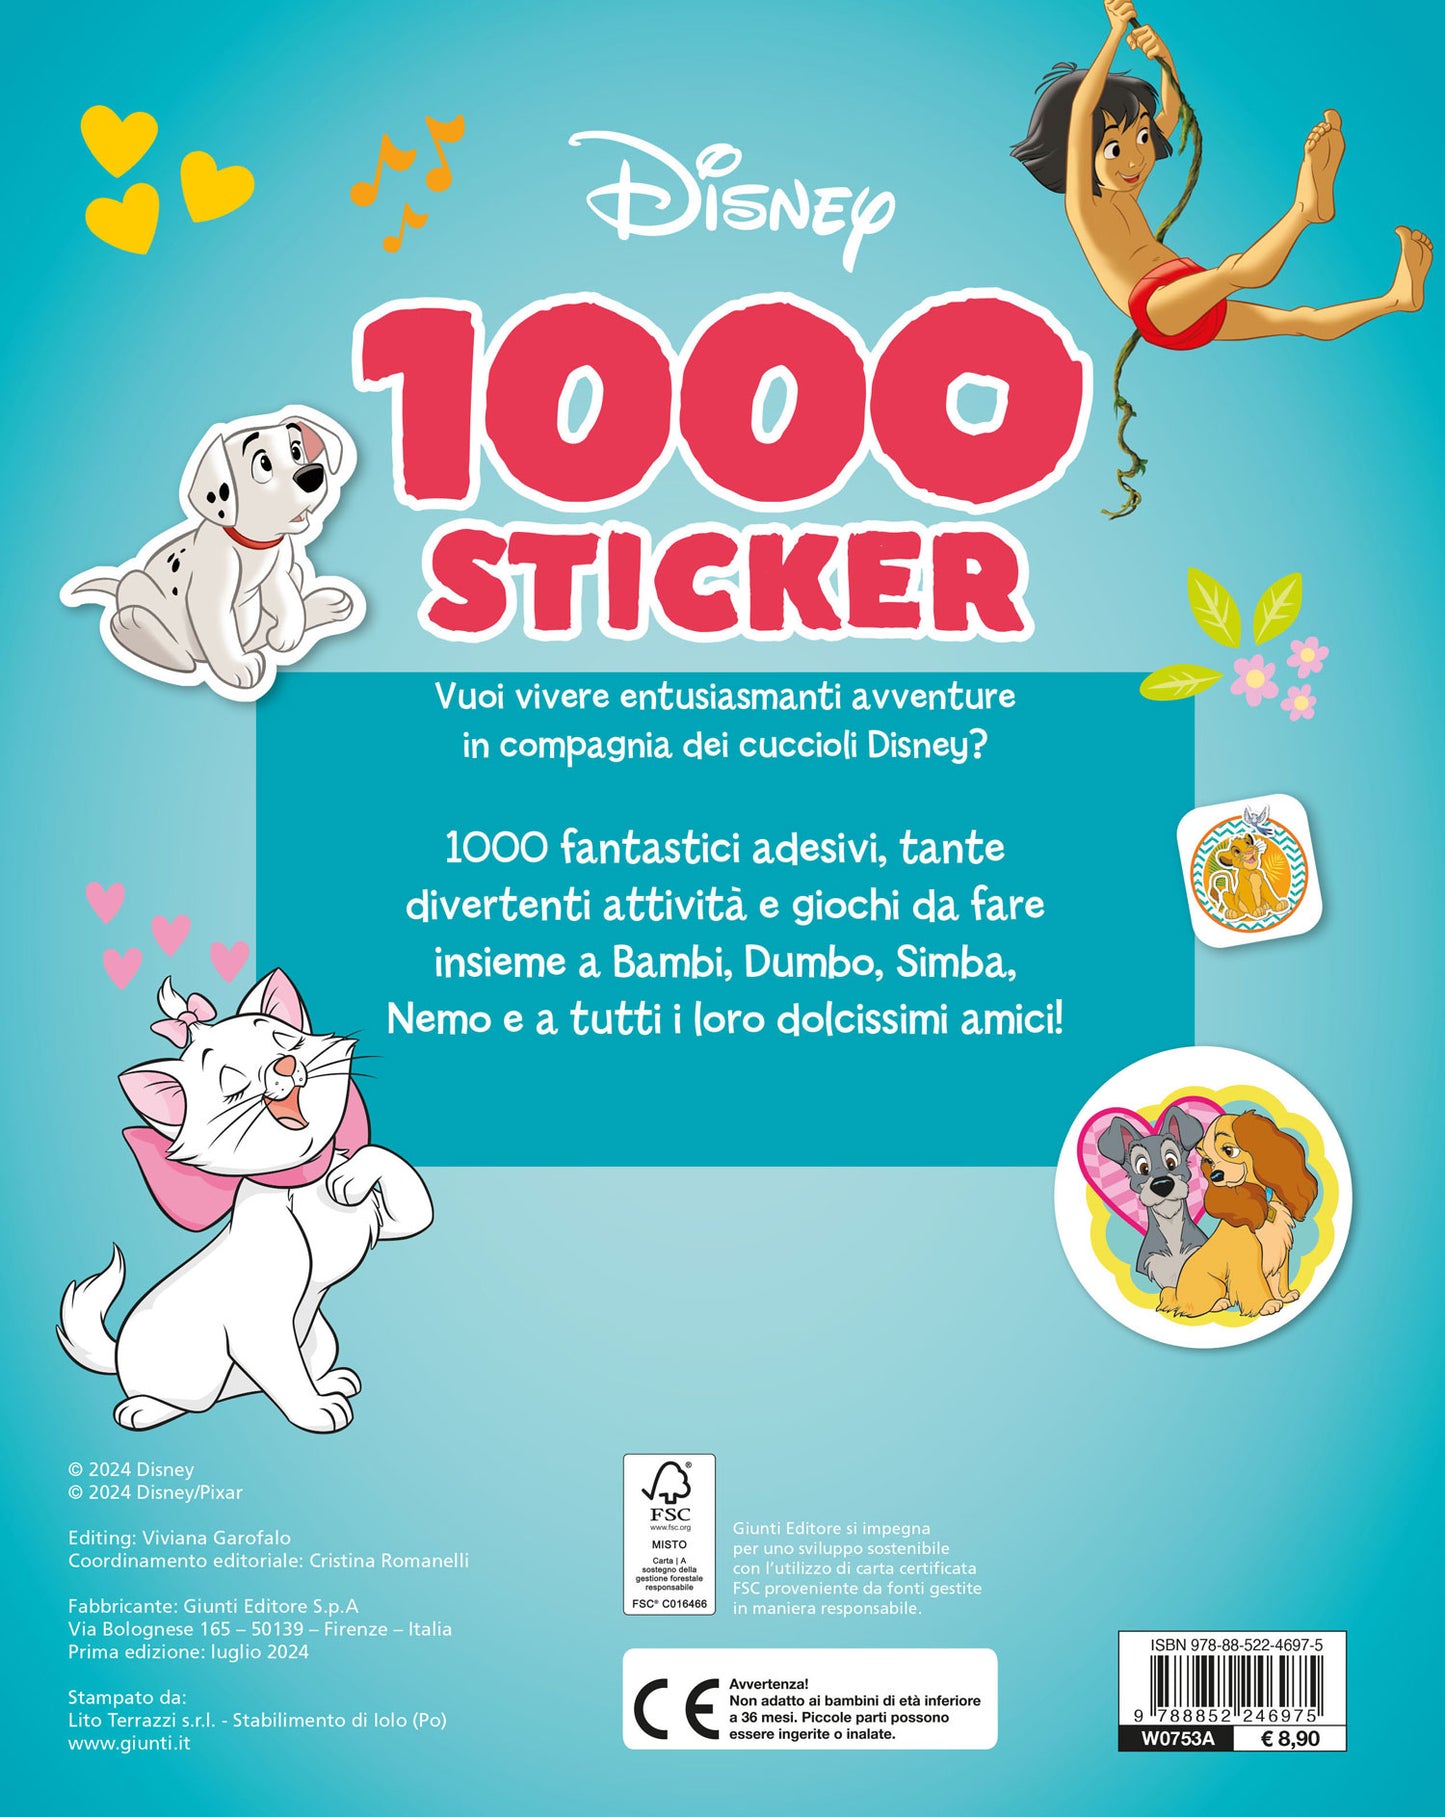 Quanti cuccioli! 1000 Sticker Disney::Tanti giochi e attività